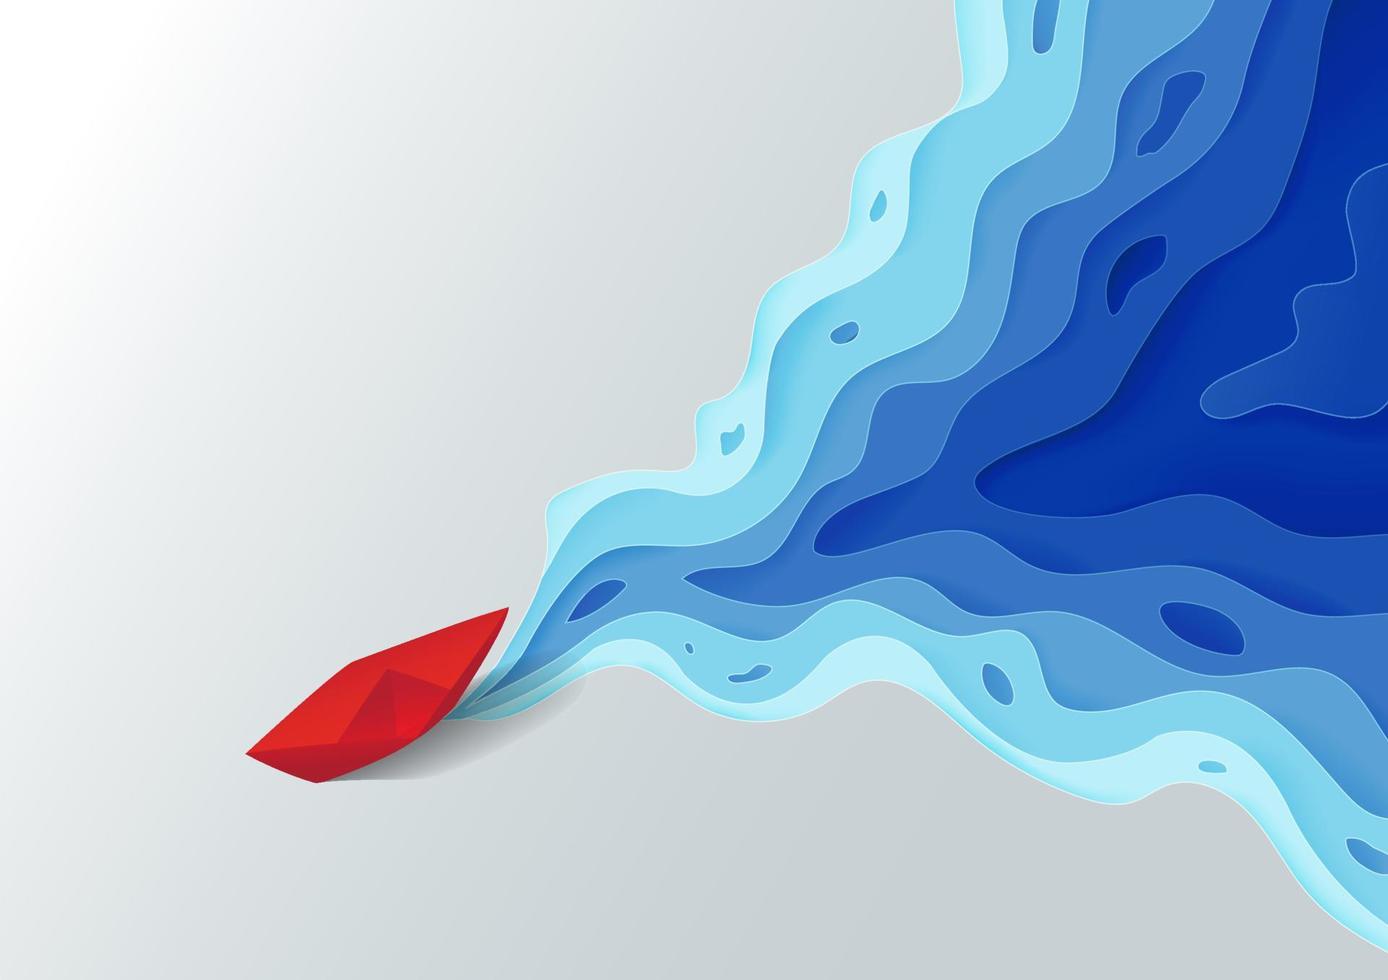 origami rode papieren boot op blauw water veelhoekige trendy ambachtelijke stijl, papier kunst ontwerp achtergrond vector